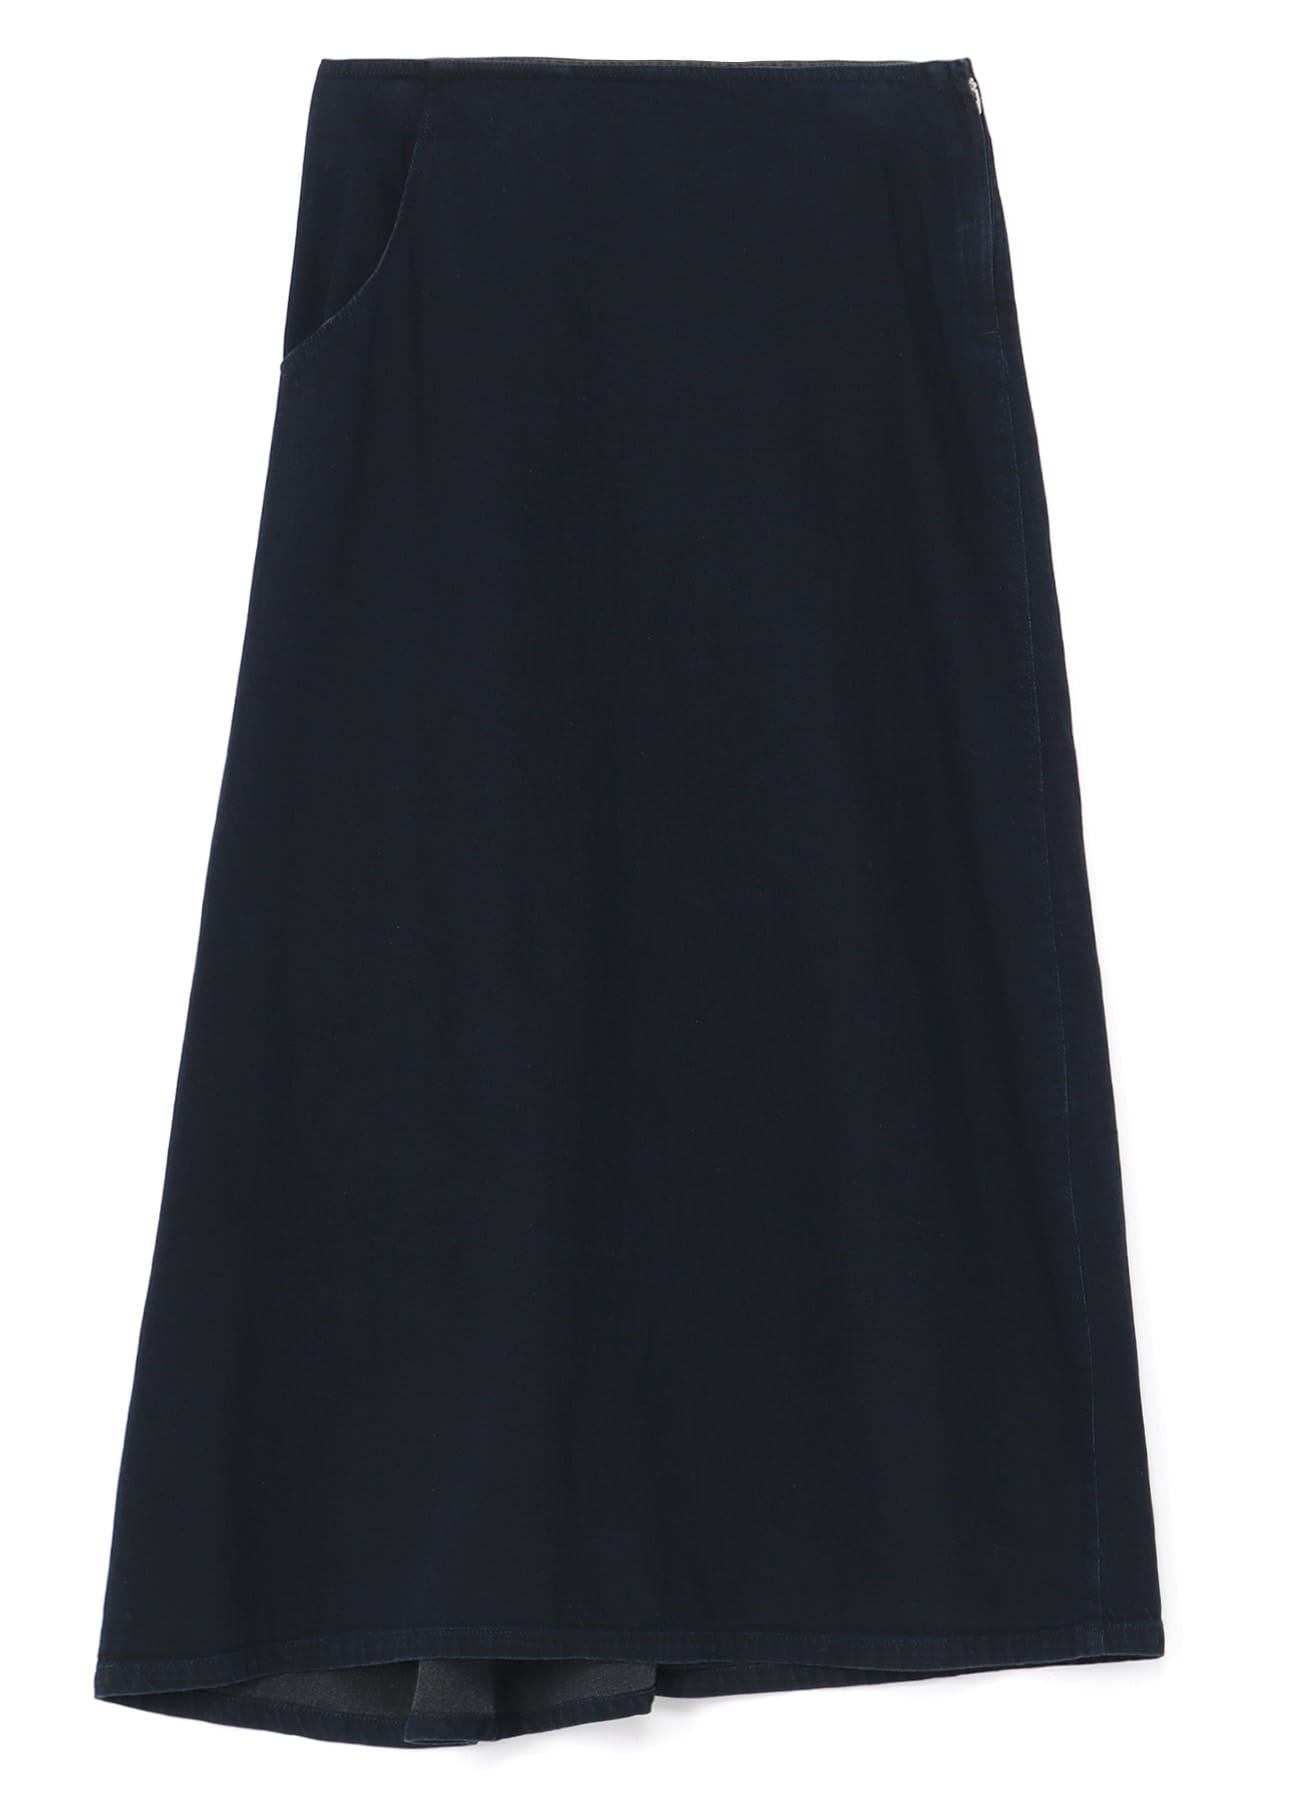 ONLY Tall ONLFARRAH - A-line skirt - black denim - Zalando.de